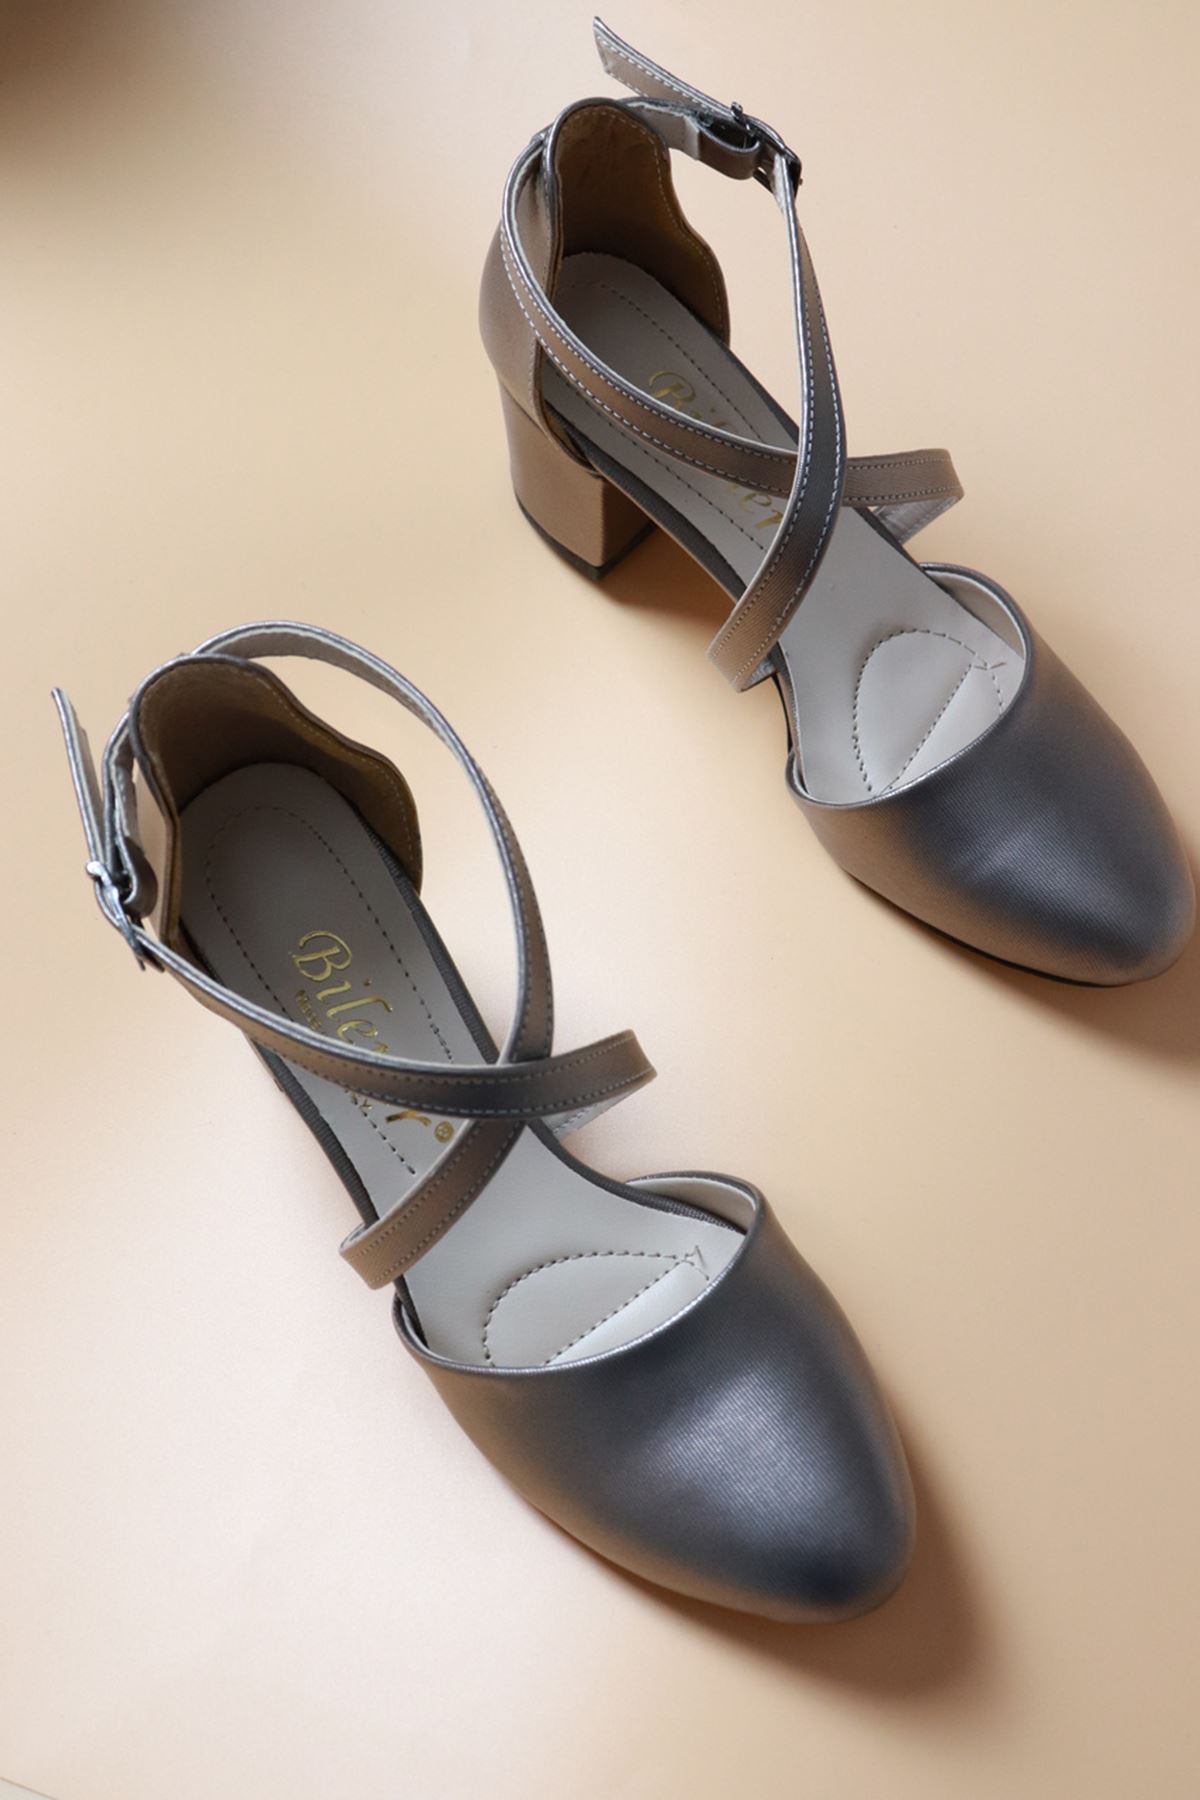 Trendayakkabı - Platin Prada Tokalı Kadın Ayakkabı